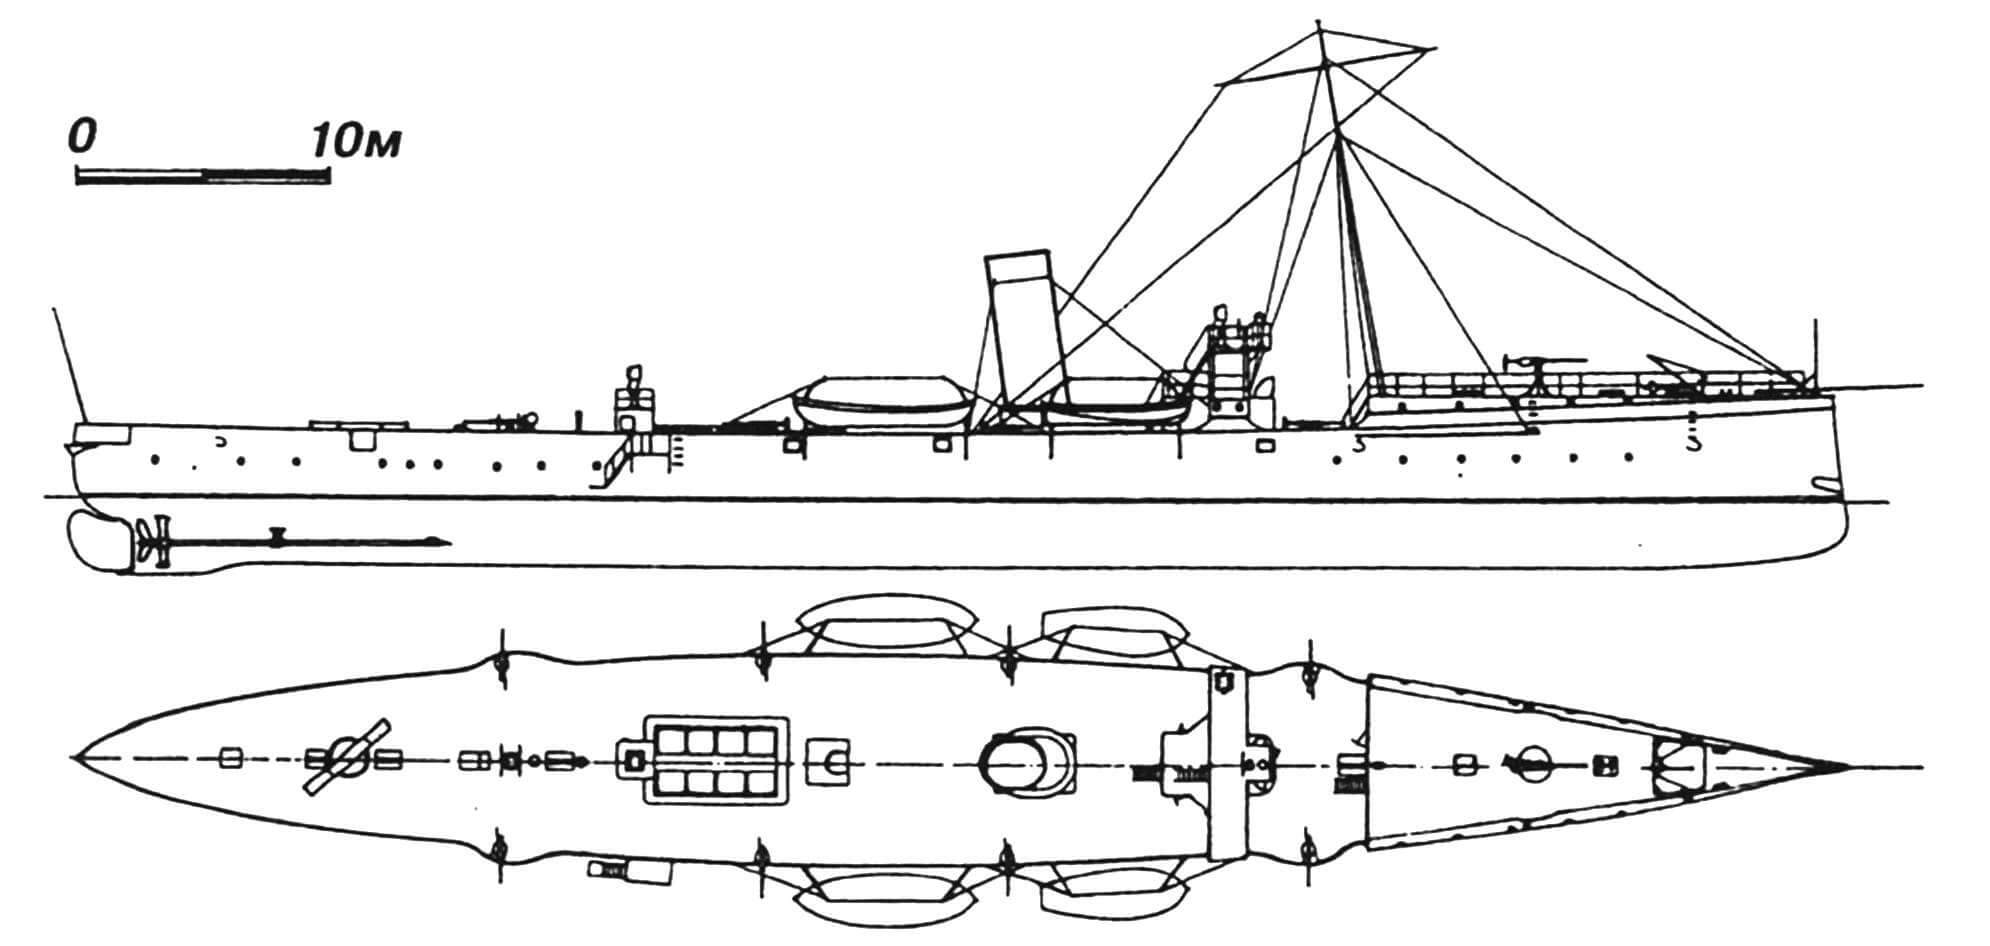 78. Минный крейсер «Сателлит», Австро-Венгрия, 1892 г. Строился в Германии фирмой «Шихау». Водоизмещение полное 620 т. Длина по ватерлинии 68,9 м, ширина 8,1 м, осадка 2,7 м. Мощность двухвальной паросиловой установки 4500 л.с., скорость на испытаниях 21,9 узла. Вооружение: два 450-мм торпедных аппарата, одна 66-мм и восемь 47-мм пушек. Построена одна единица. В 1912— 1913 гг. заменены котлы: корабль получил три трубы вместо одной. После Первой мировой войны передан Италии, где в 1920 г. сдан на слом.